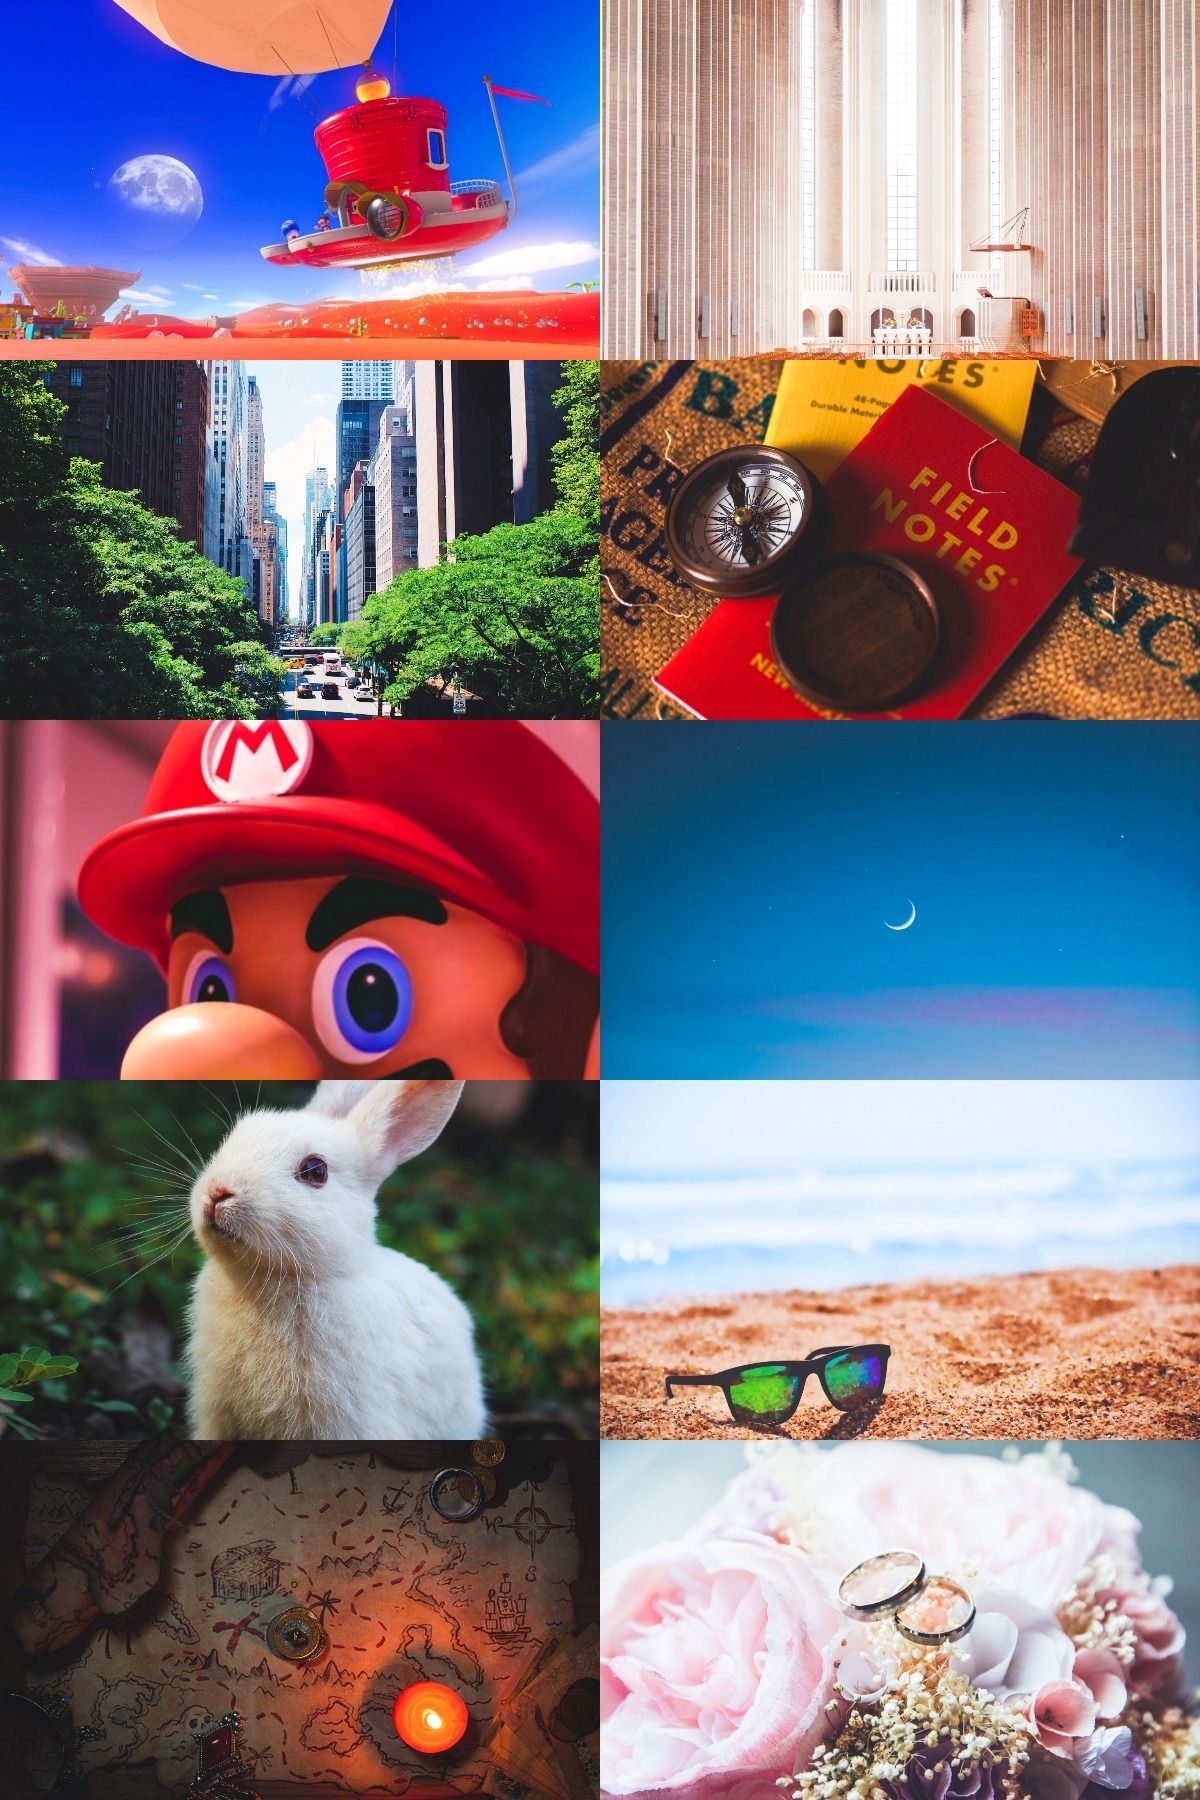 A collage of photos including Mario, a book, a candle, a rabbit, sunglasses, a cake, a city, and a beach. - Super Mario